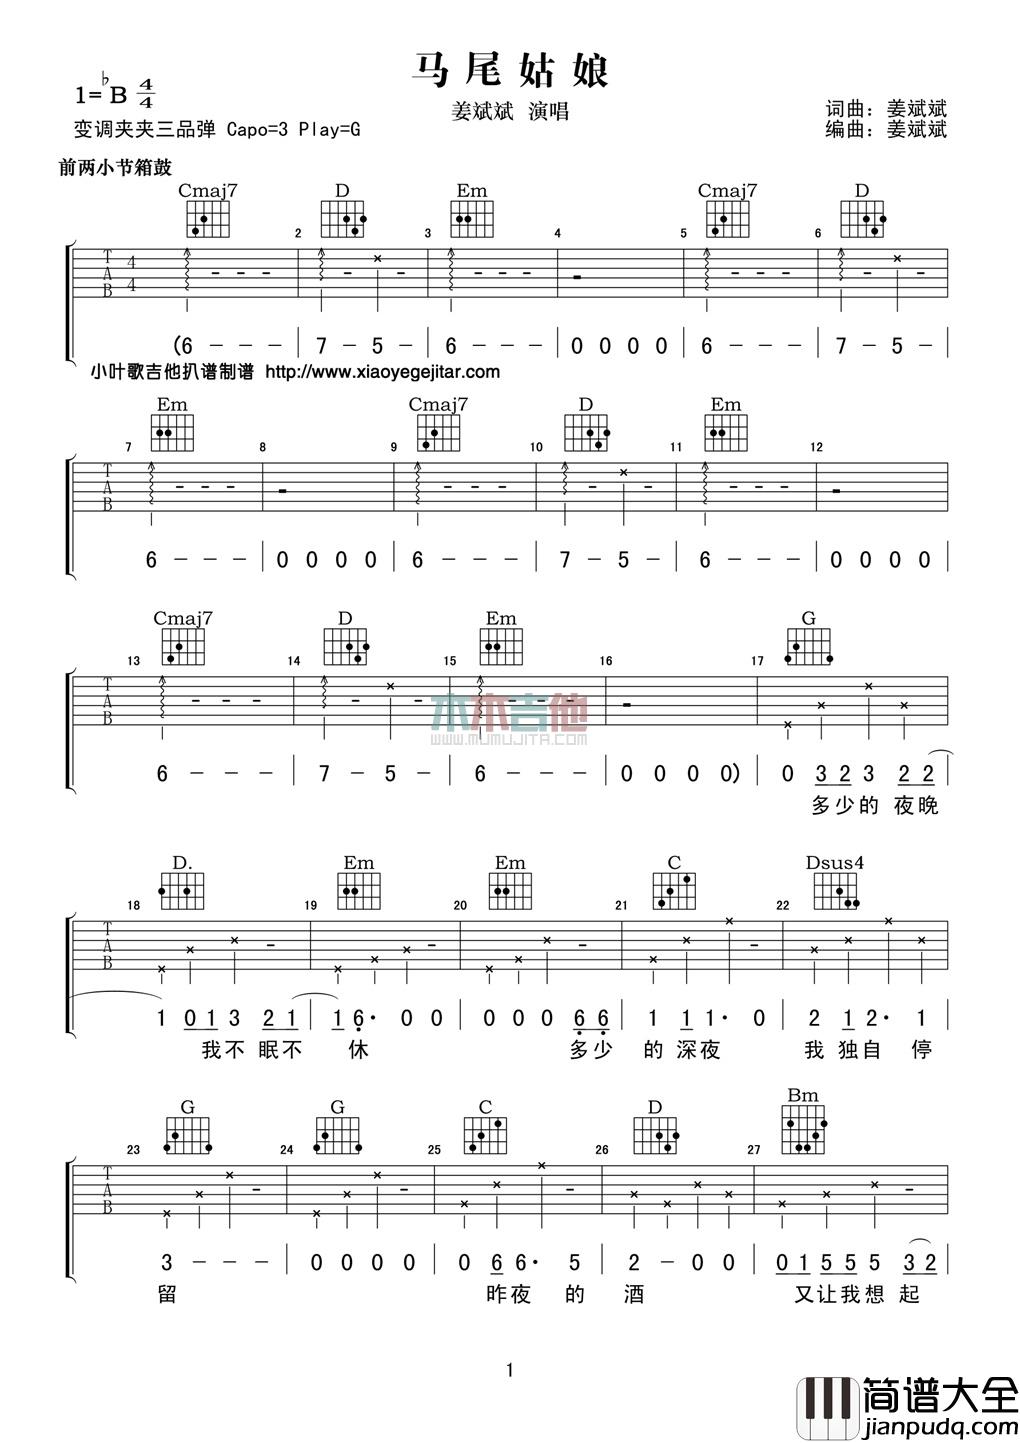 姜斌斌_马尾姑娘_吉他谱_Guitar_Music_Score